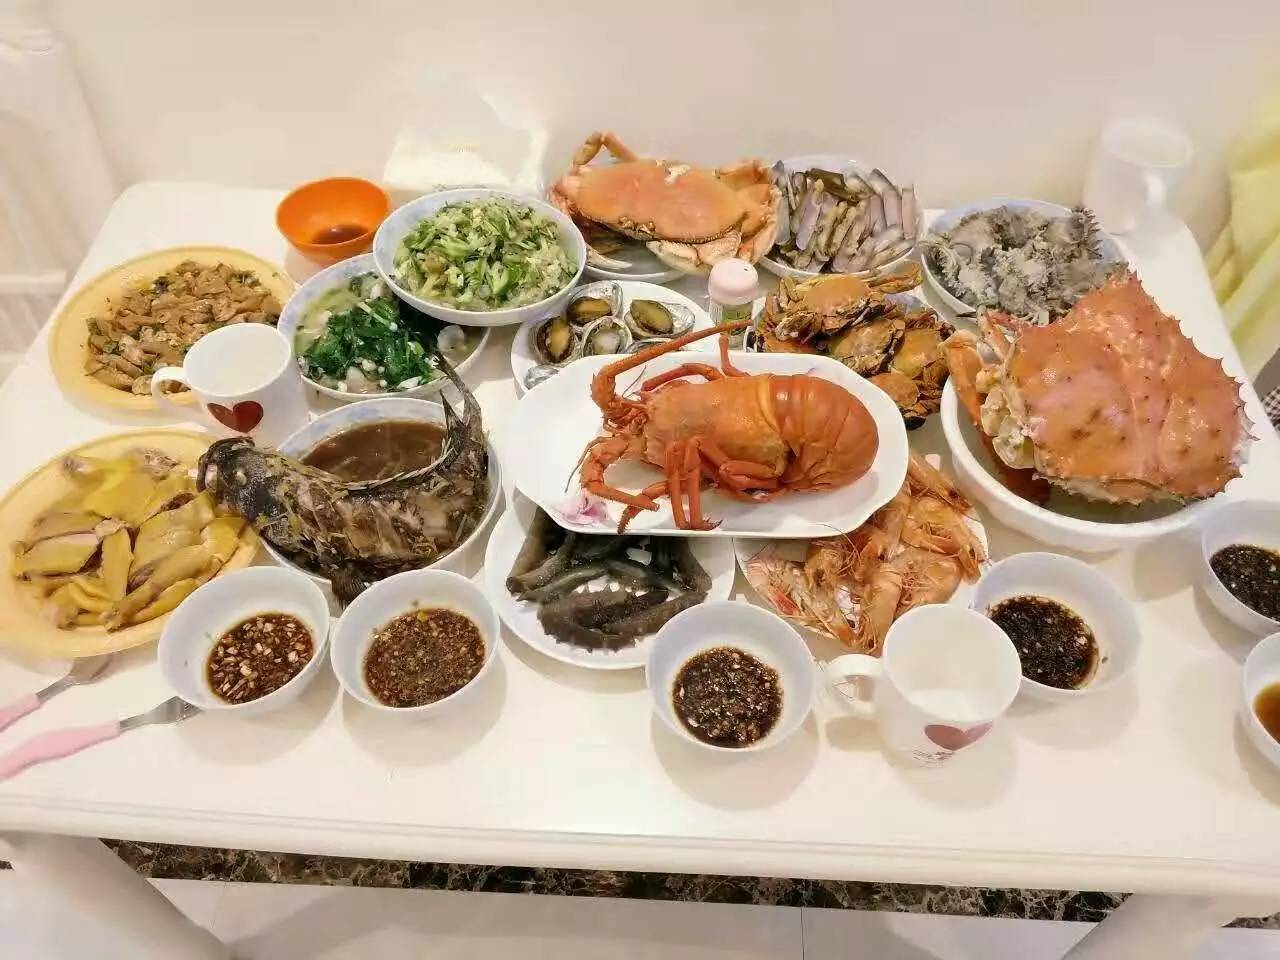 龙虾鲍鱼海参帝王蟹…天啊,这顿年夜饭也太鲜了!